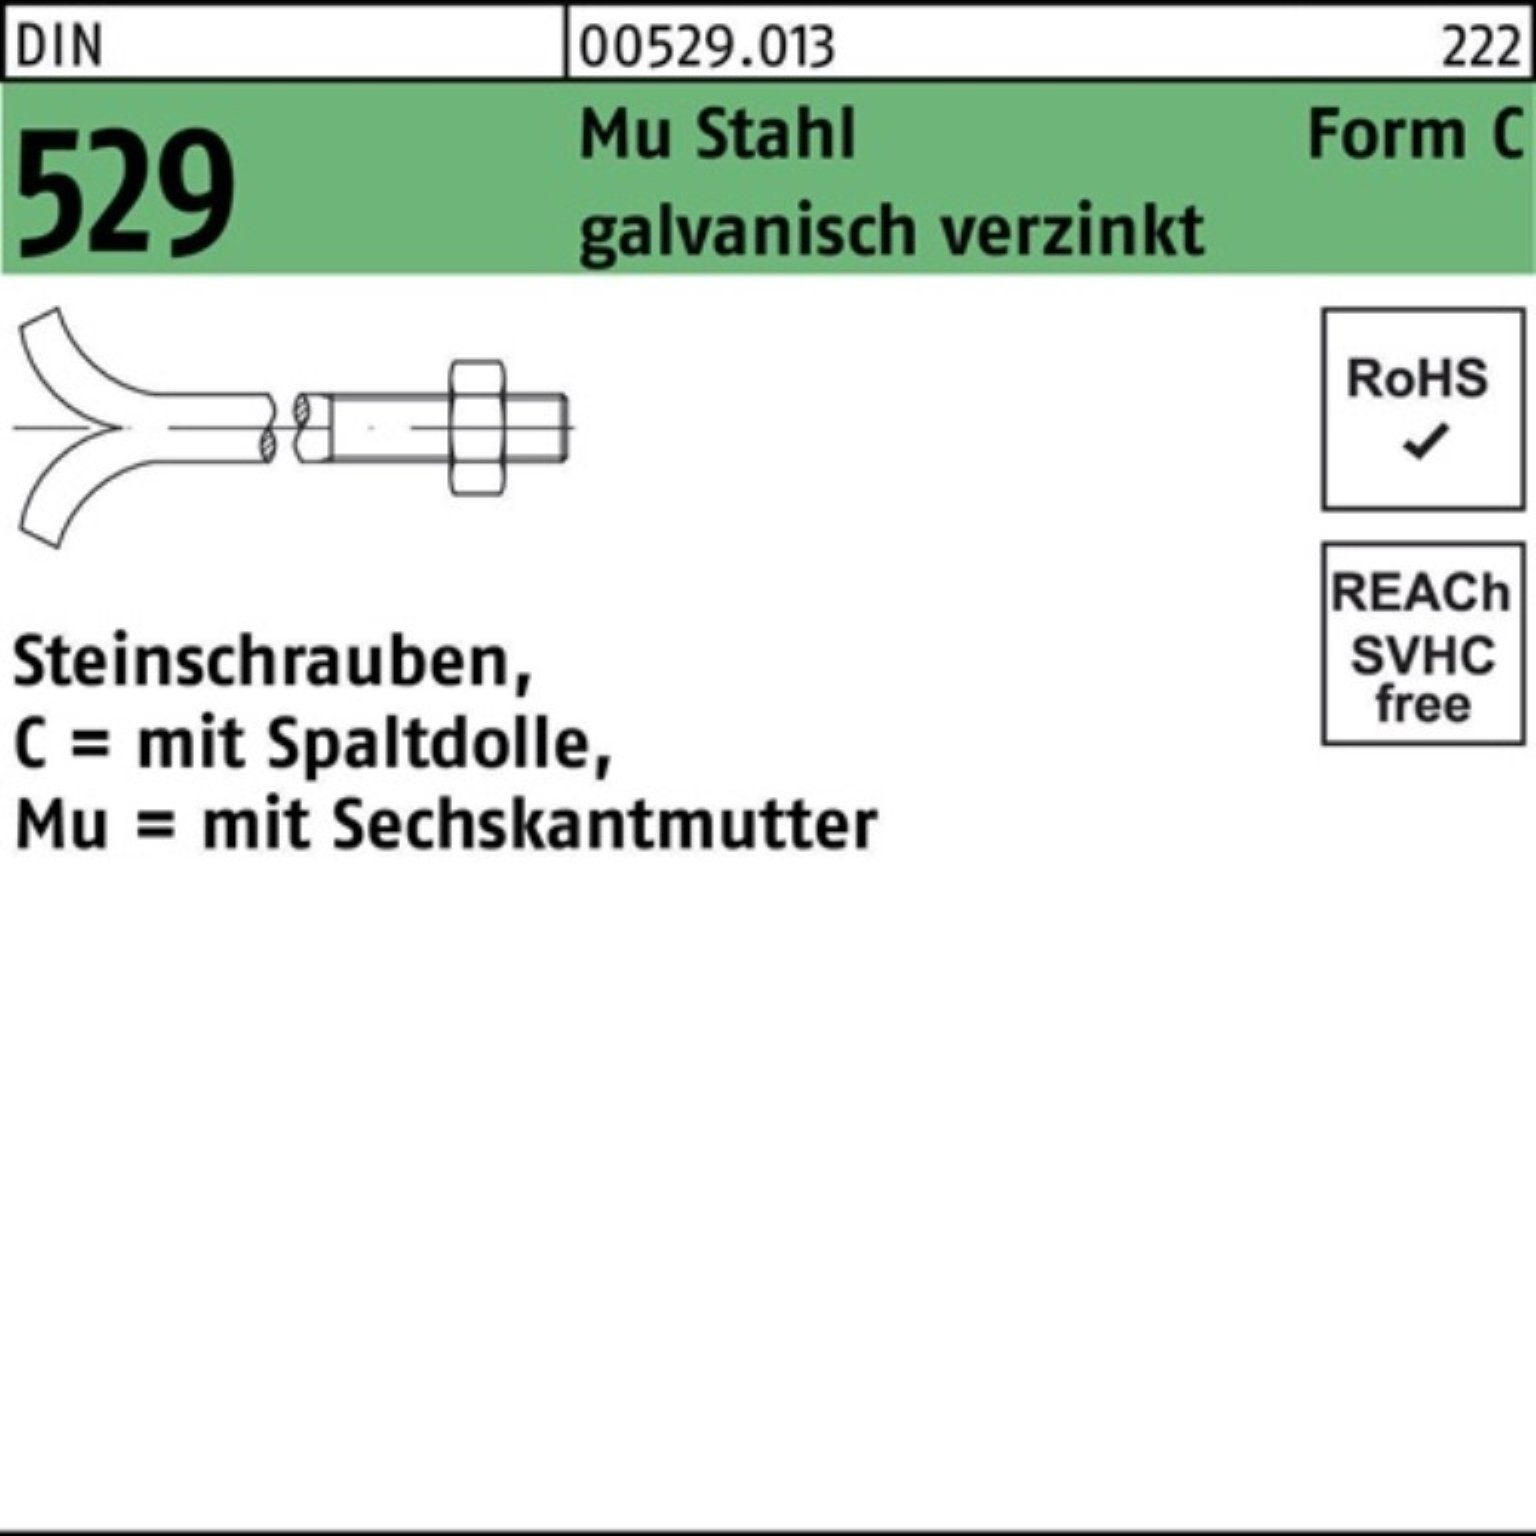 529 Steinschraube CM Schraube 16x100 DIN Reyher 100er Pack Mu 3. Spaltdolle/6-ktmutter